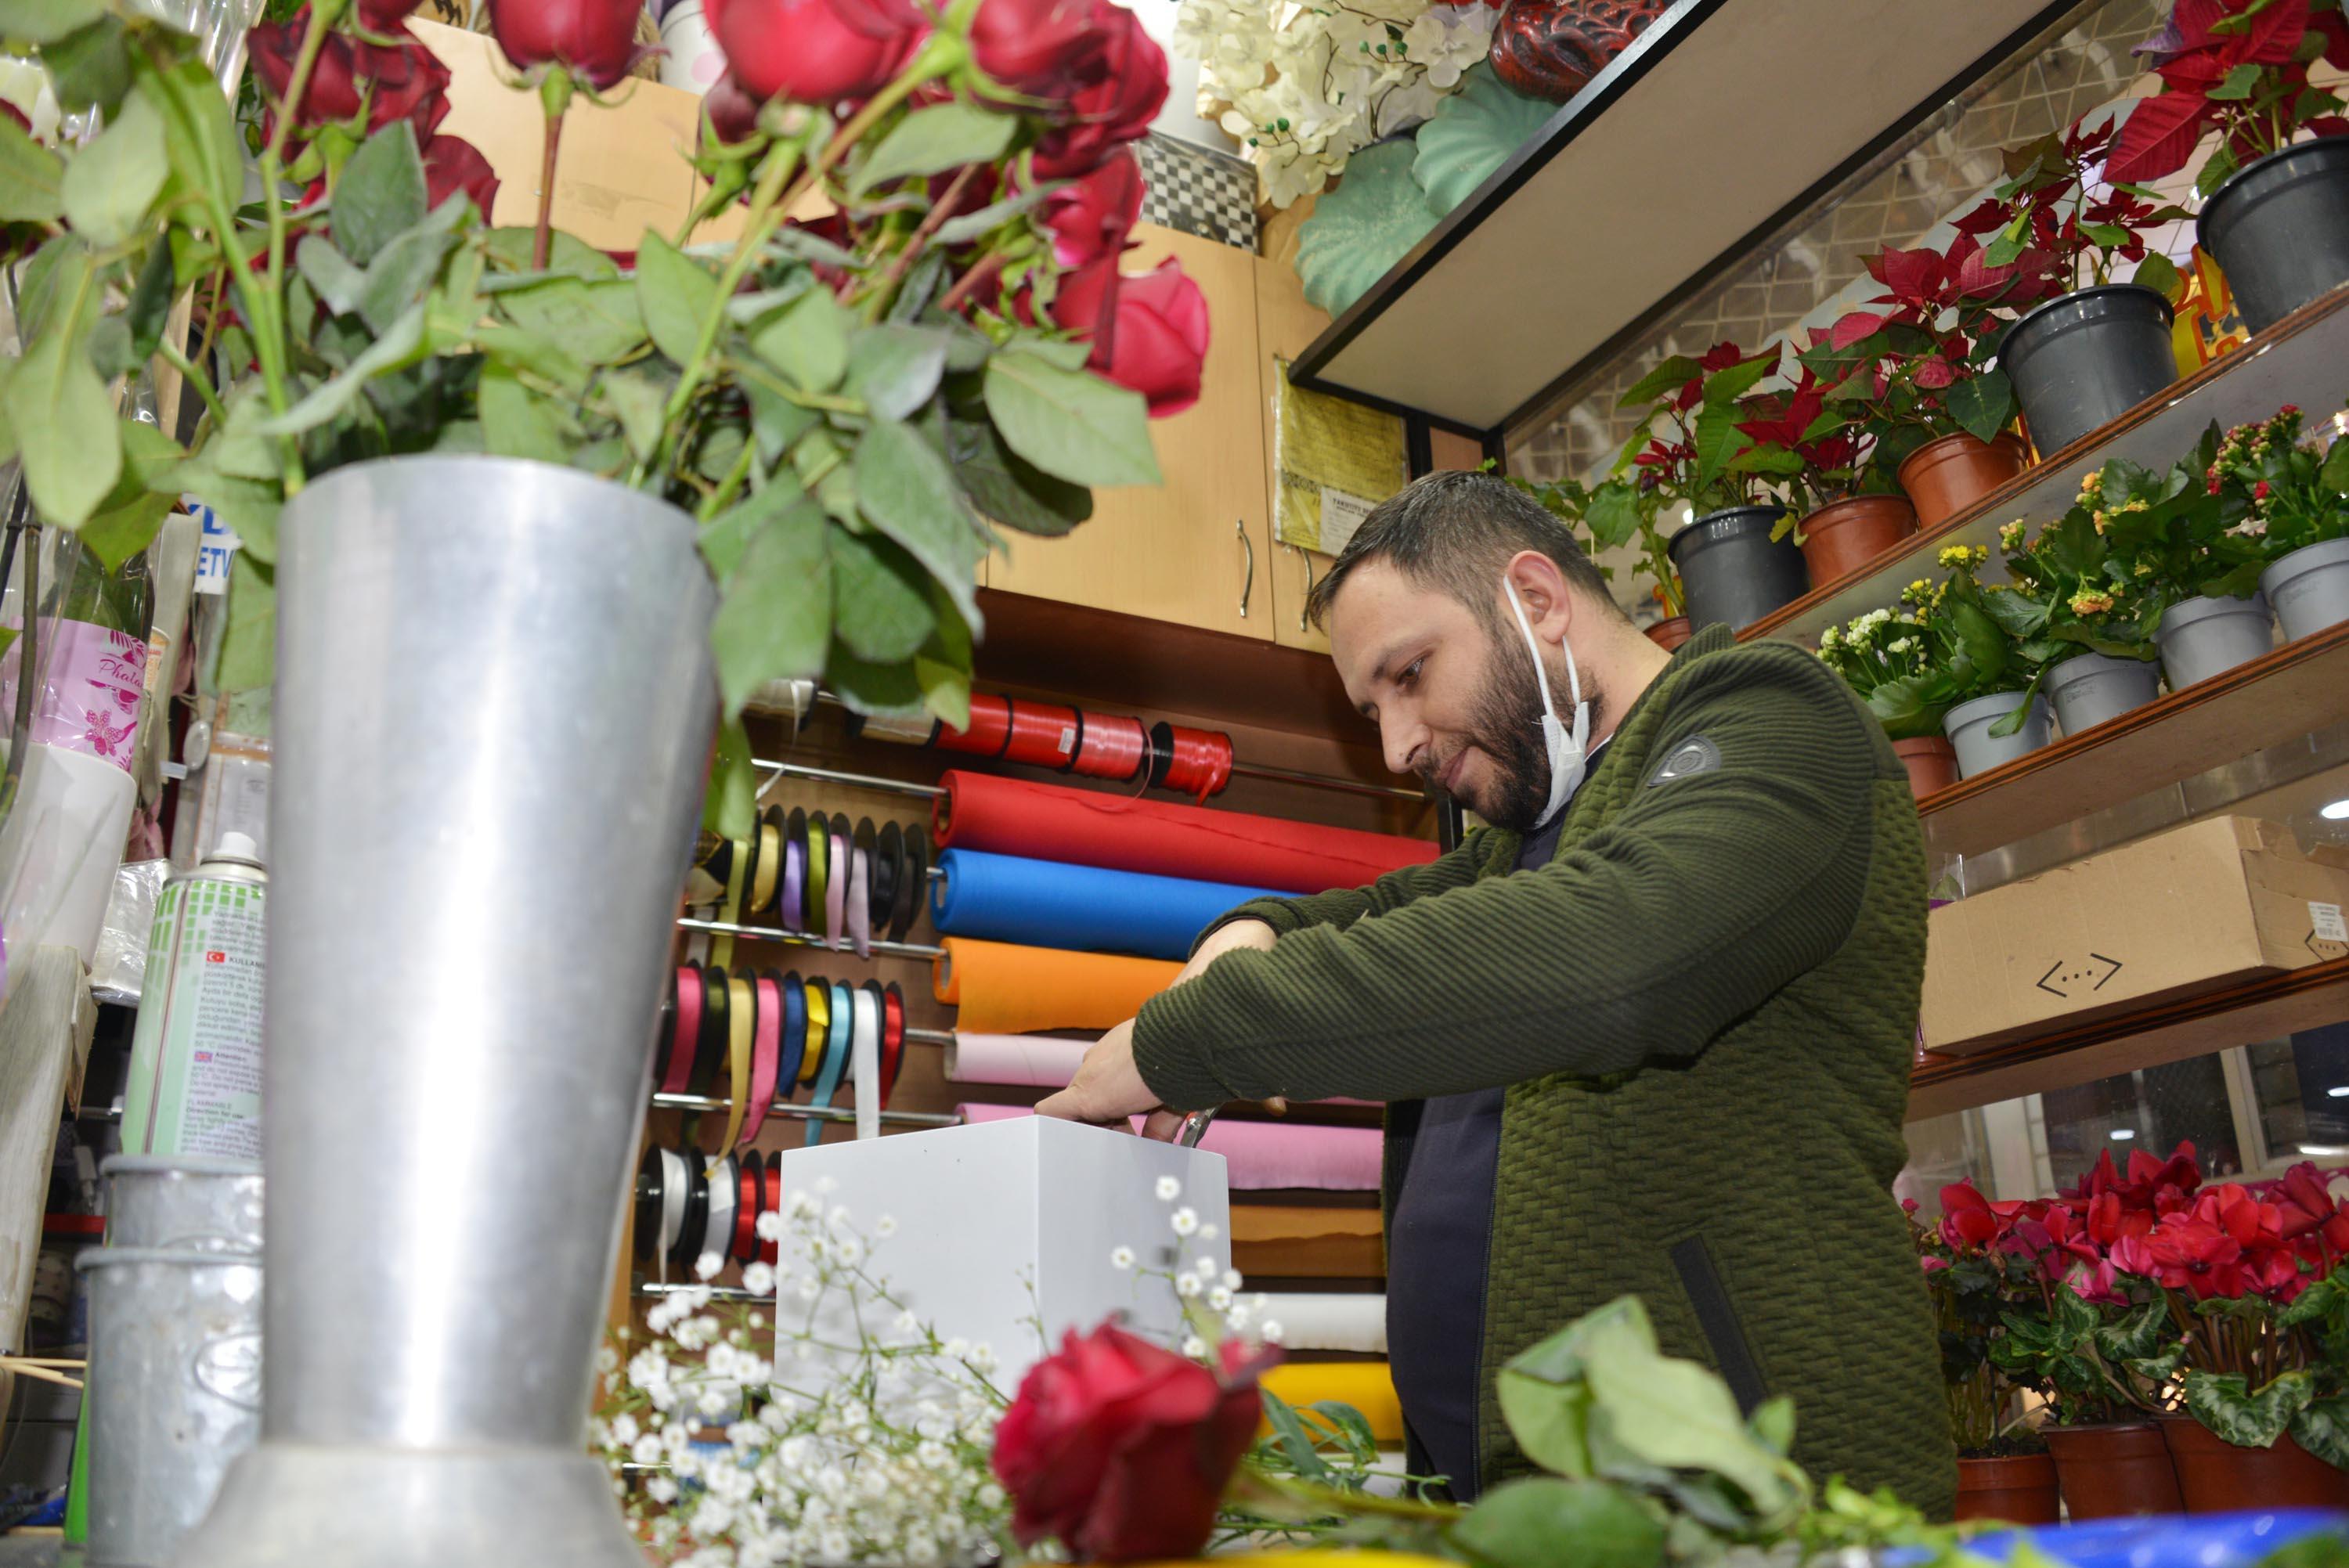 Erzurumlu çiçekçi: Sevgilisine kilosu kadar gül alan var